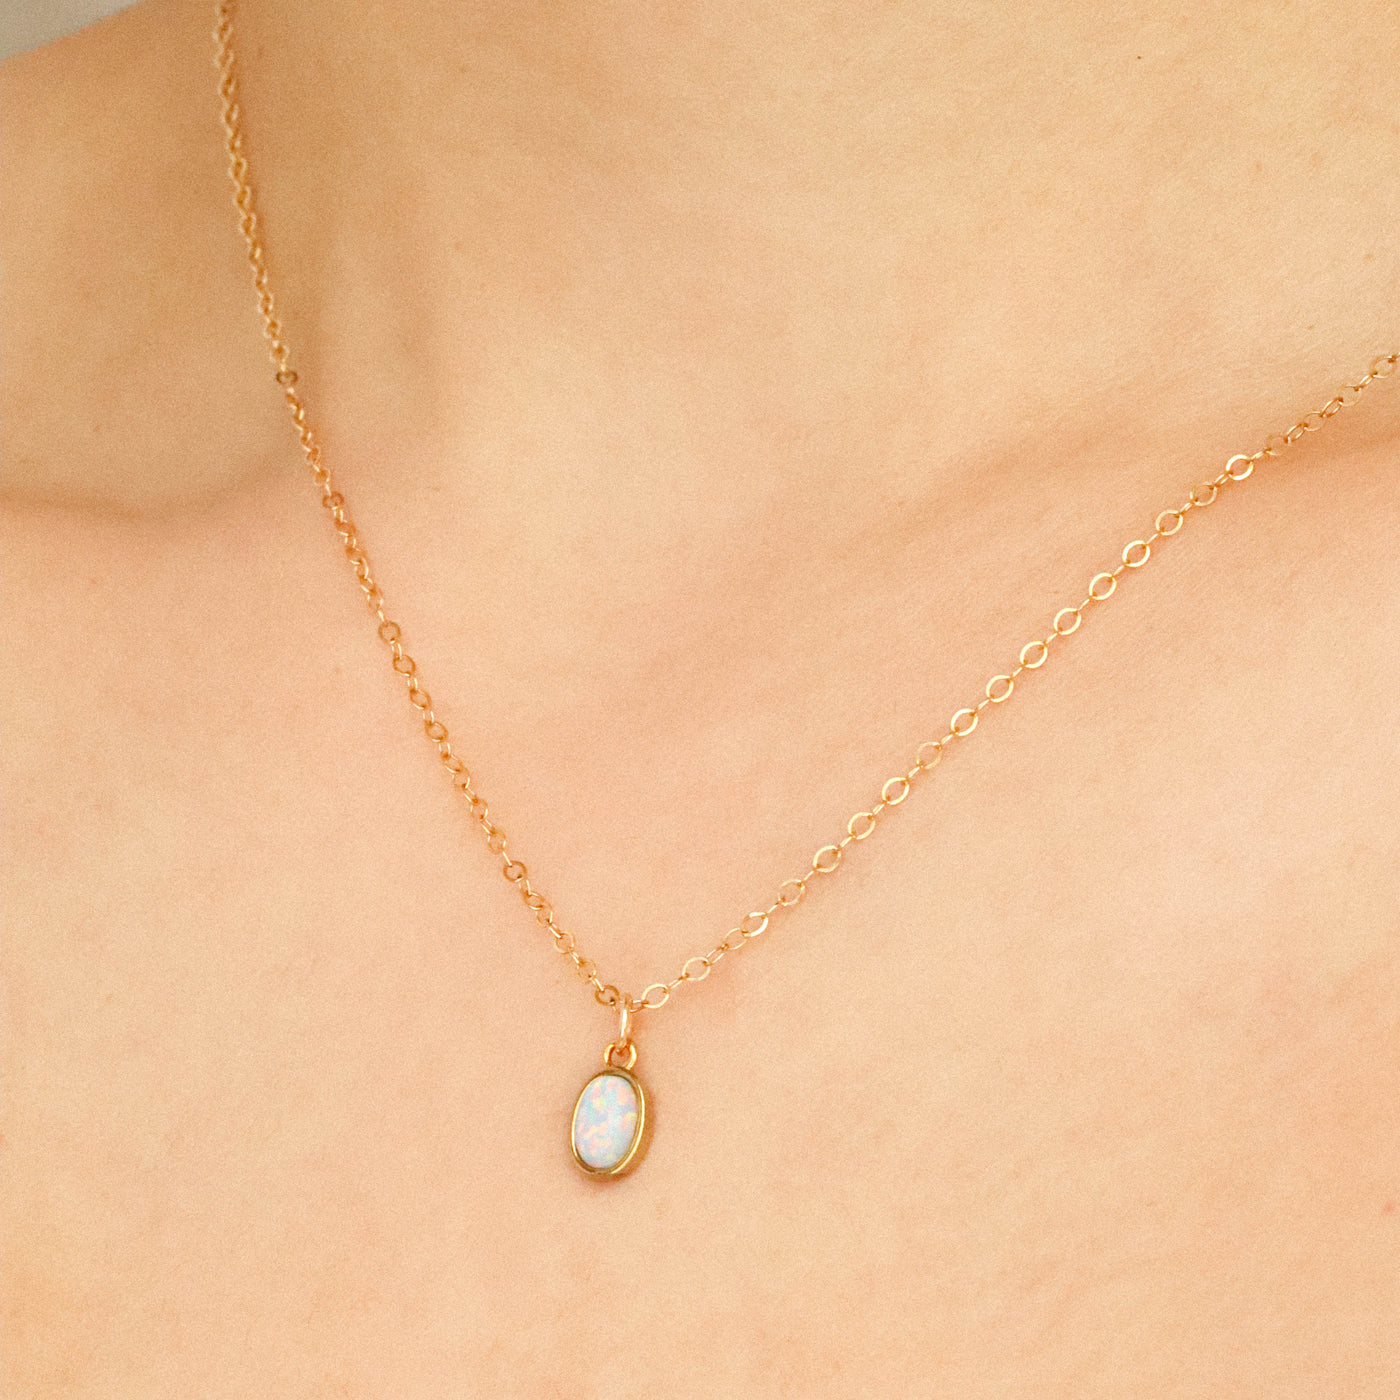 Gold opal pendant necklace